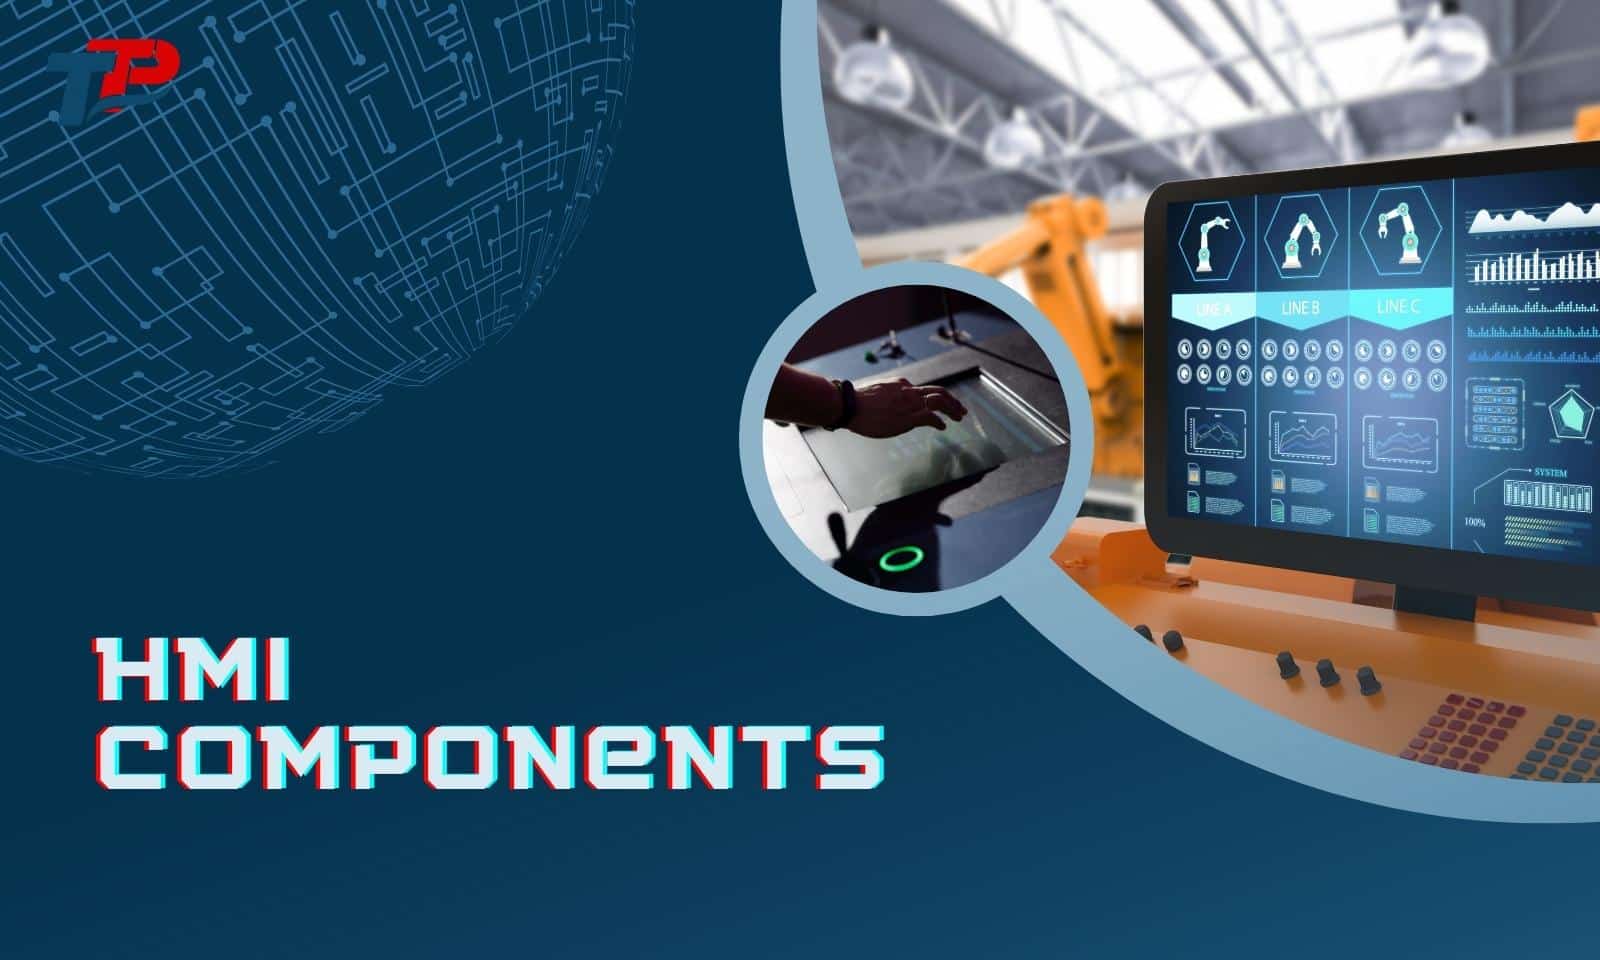 HMI Components, thiết bị được ứng dụng rộng rãi